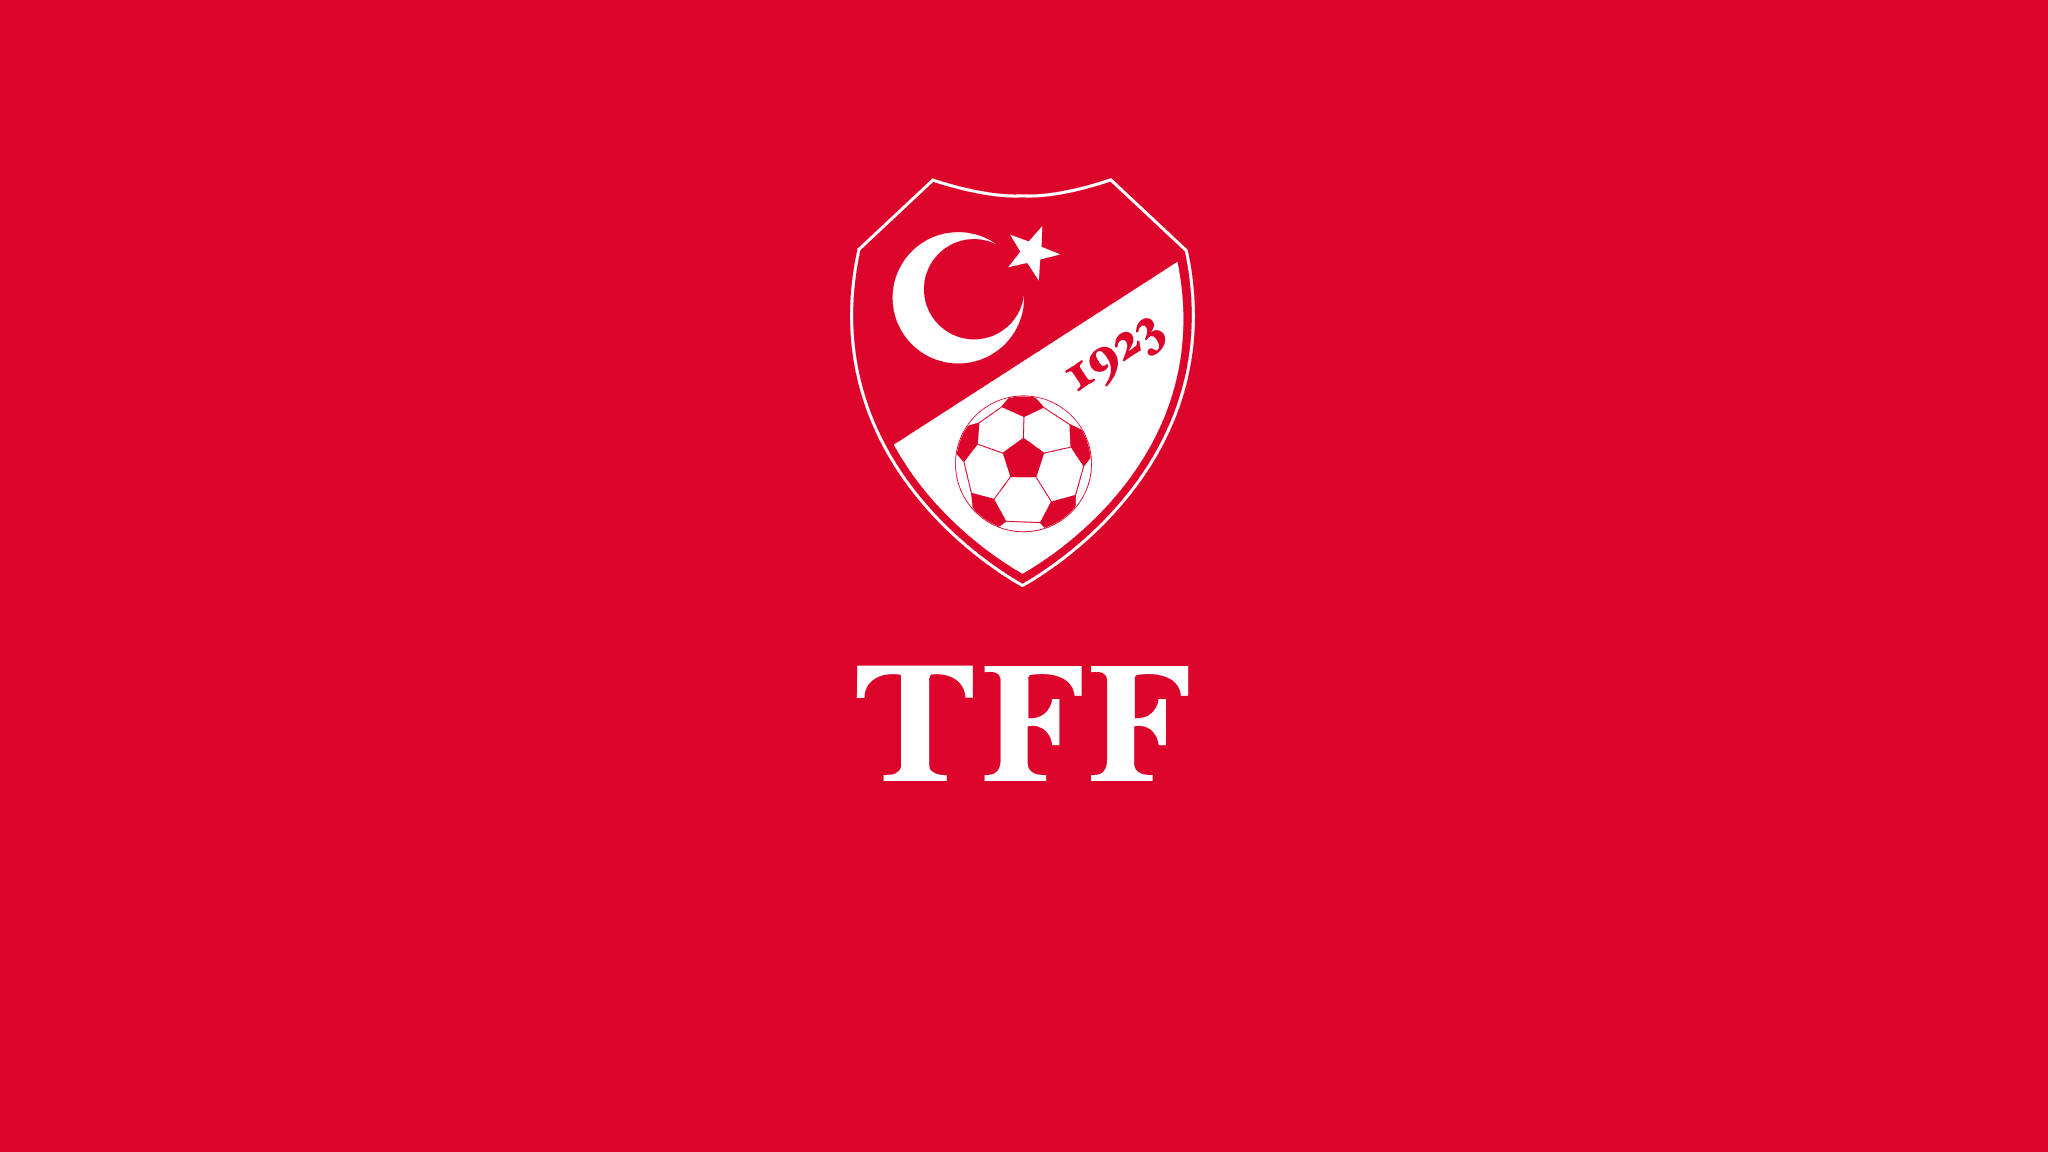 欧洲杯土耳其赛程时间安排 小组赛将面对夺冠热门葡萄牙